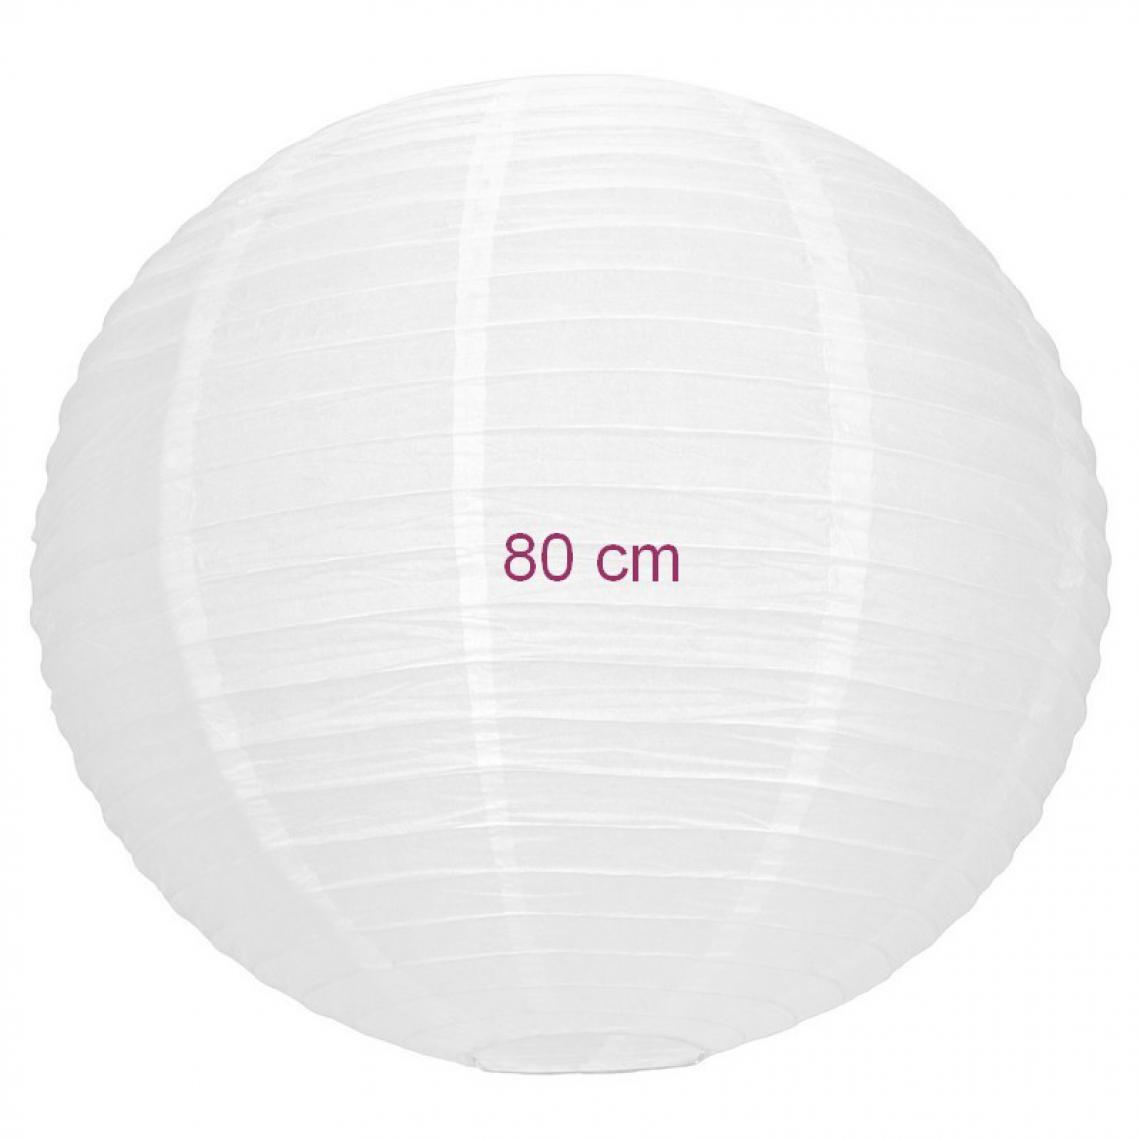 Partypro - Maxi Lampion Boule Géante chinoise blanche, Lanterne japonaise, 80 cm de diamètre, à suspendre - Photophores